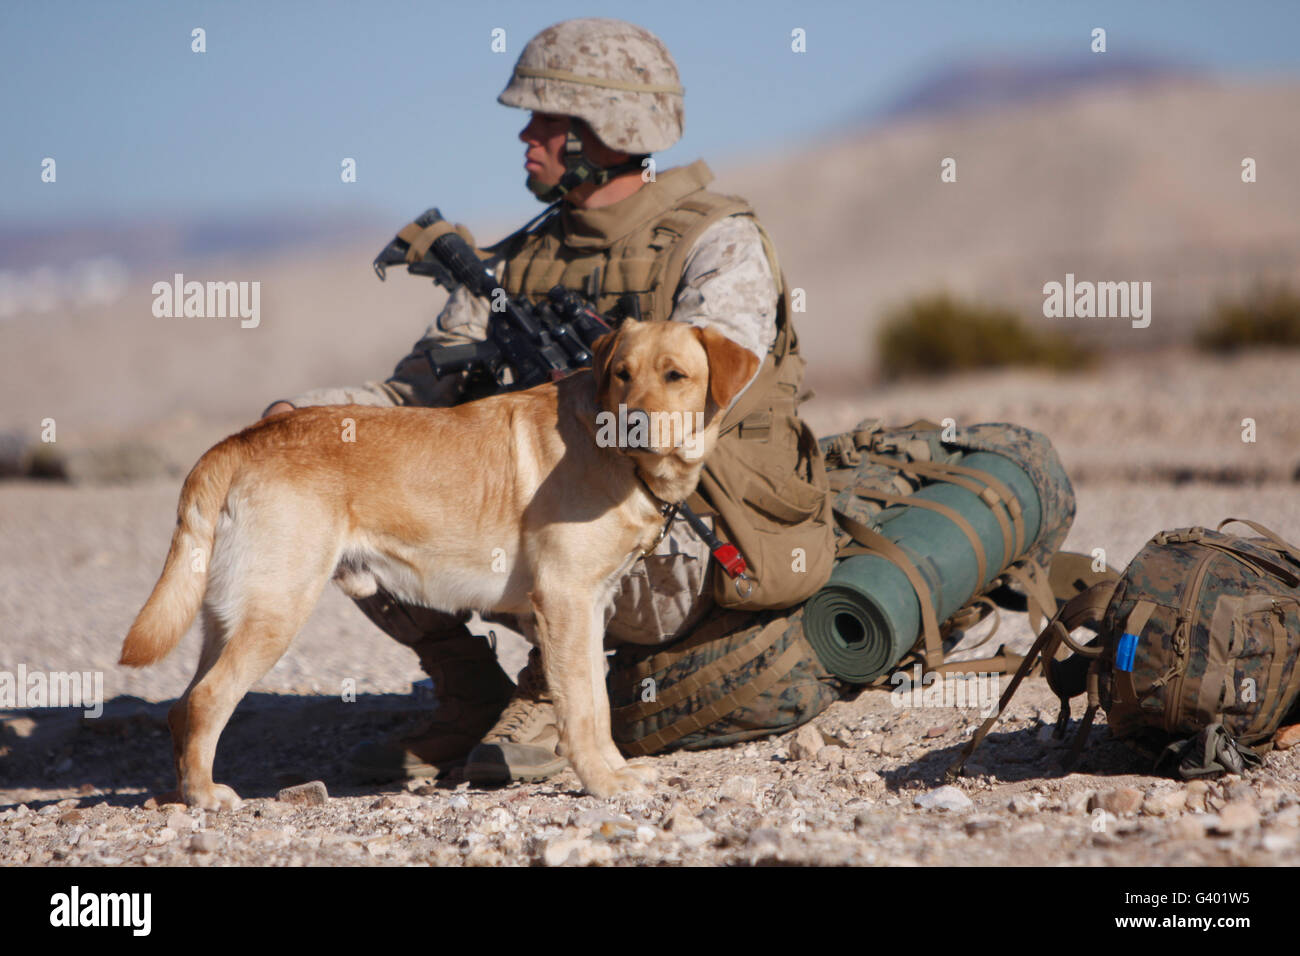 A Yellow Labrador Retriever and his handler take a break in the desert. Stock Photo